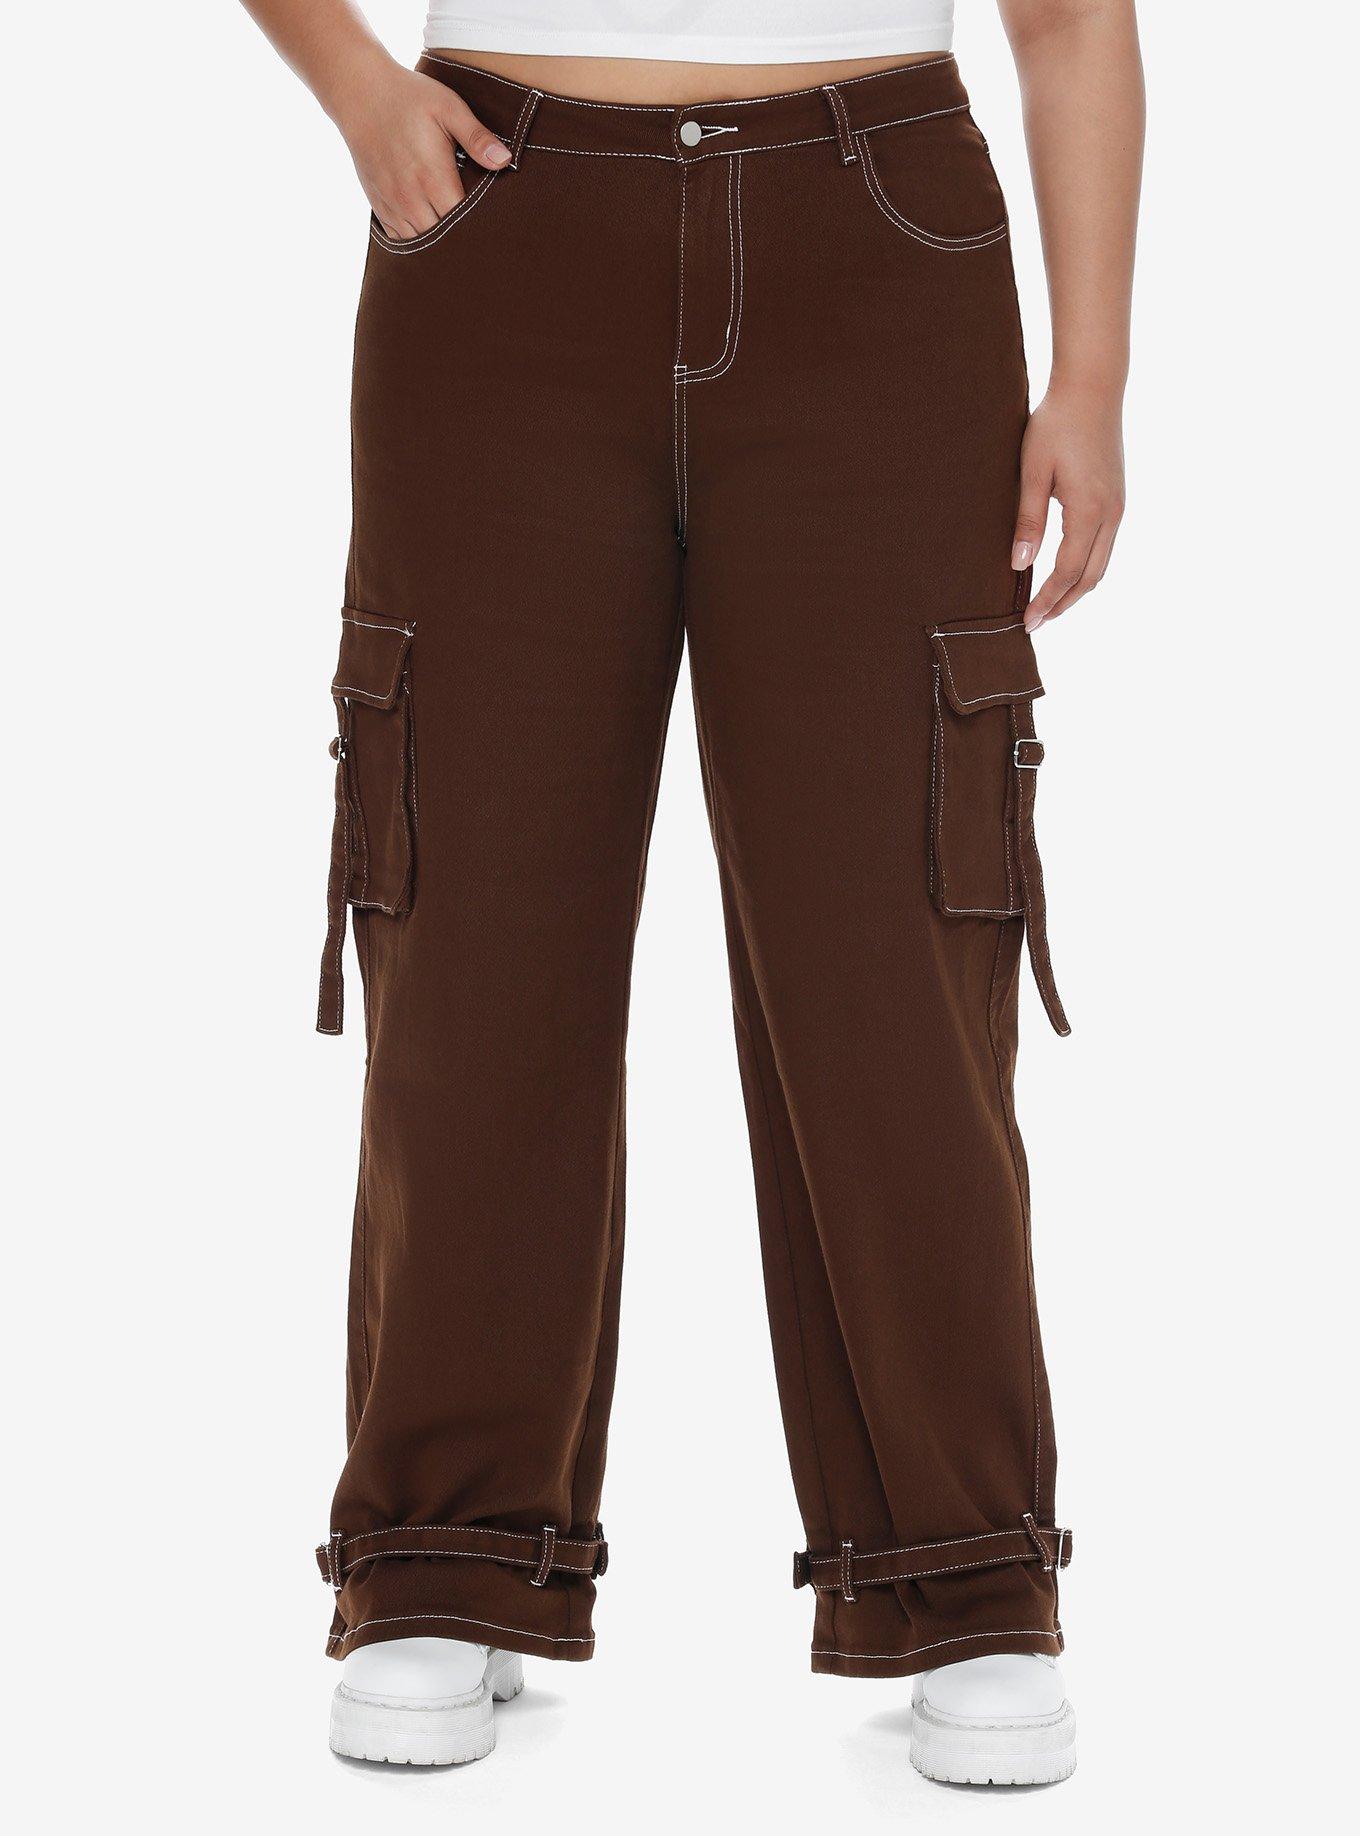 Brown Contrast Stitch Strap Carpenter Pants Plus Size, BROWN, hi-res